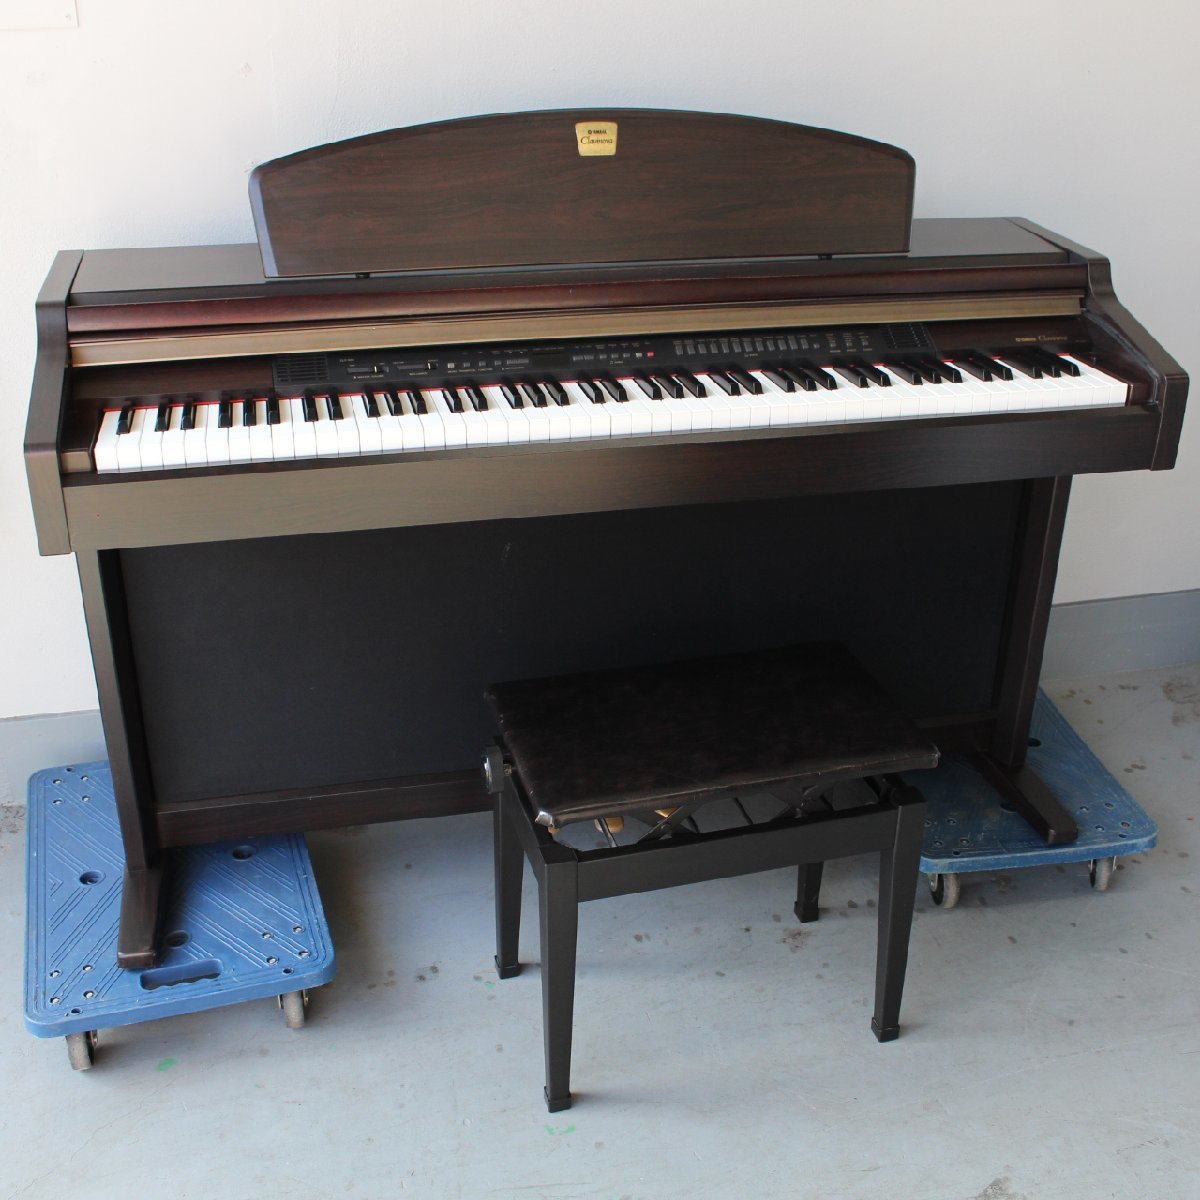 横浜市泉区にて ヤマハ 電子ピアノ clavinova CLP-950 2000年製  を出張買取させて頂きました。